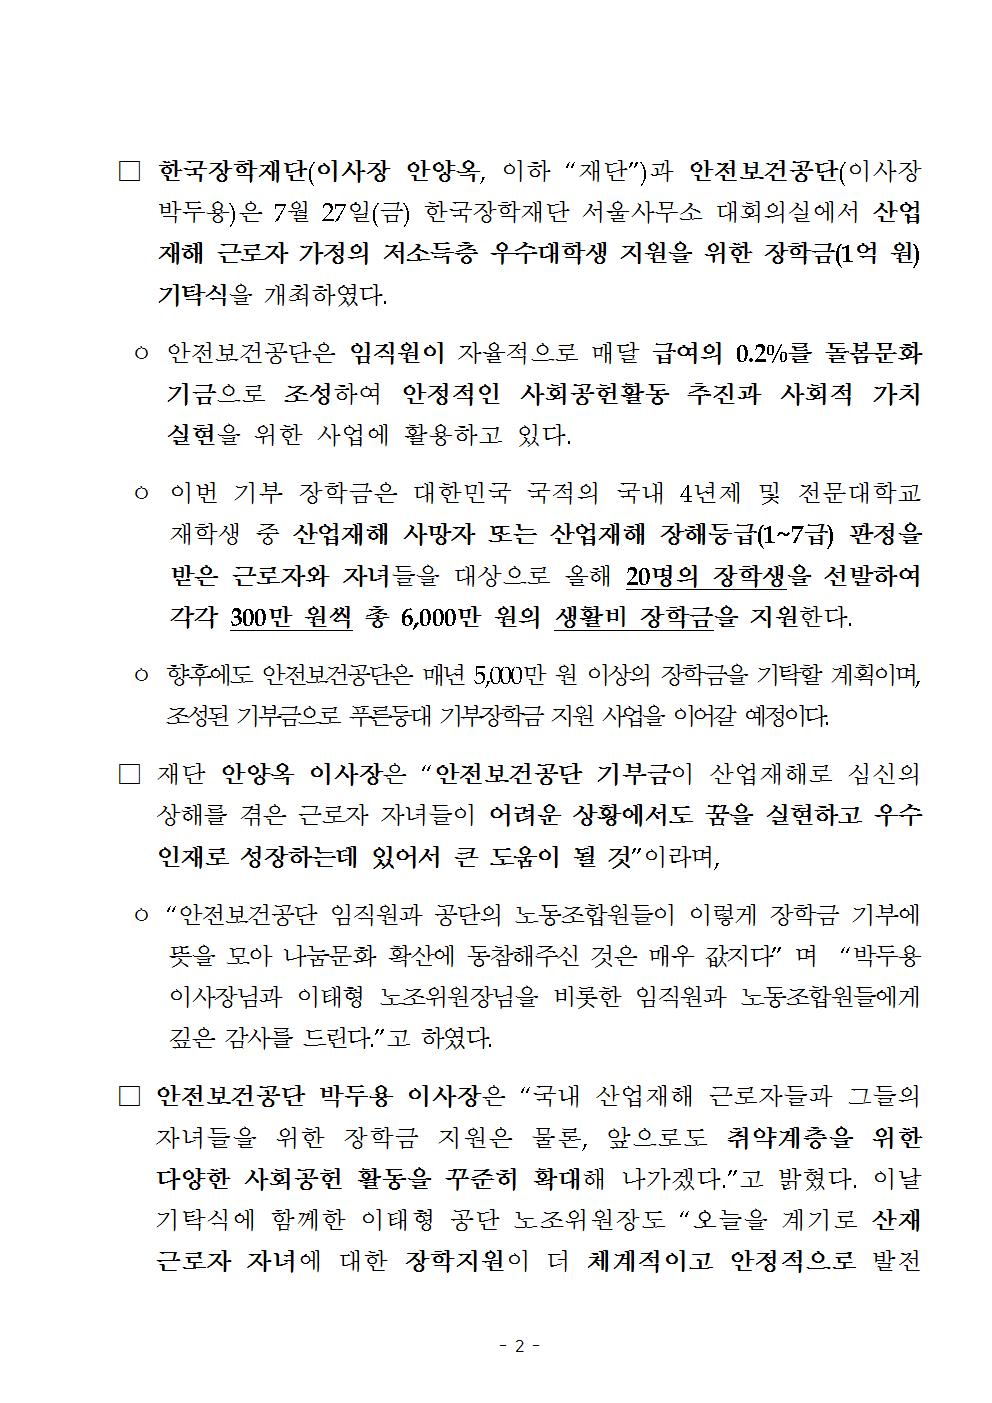 07-30(월)[보도자료] 한국장학재단, 안전보건공단과 푸른등대 기부장학금 기탁식 개최002.jpg